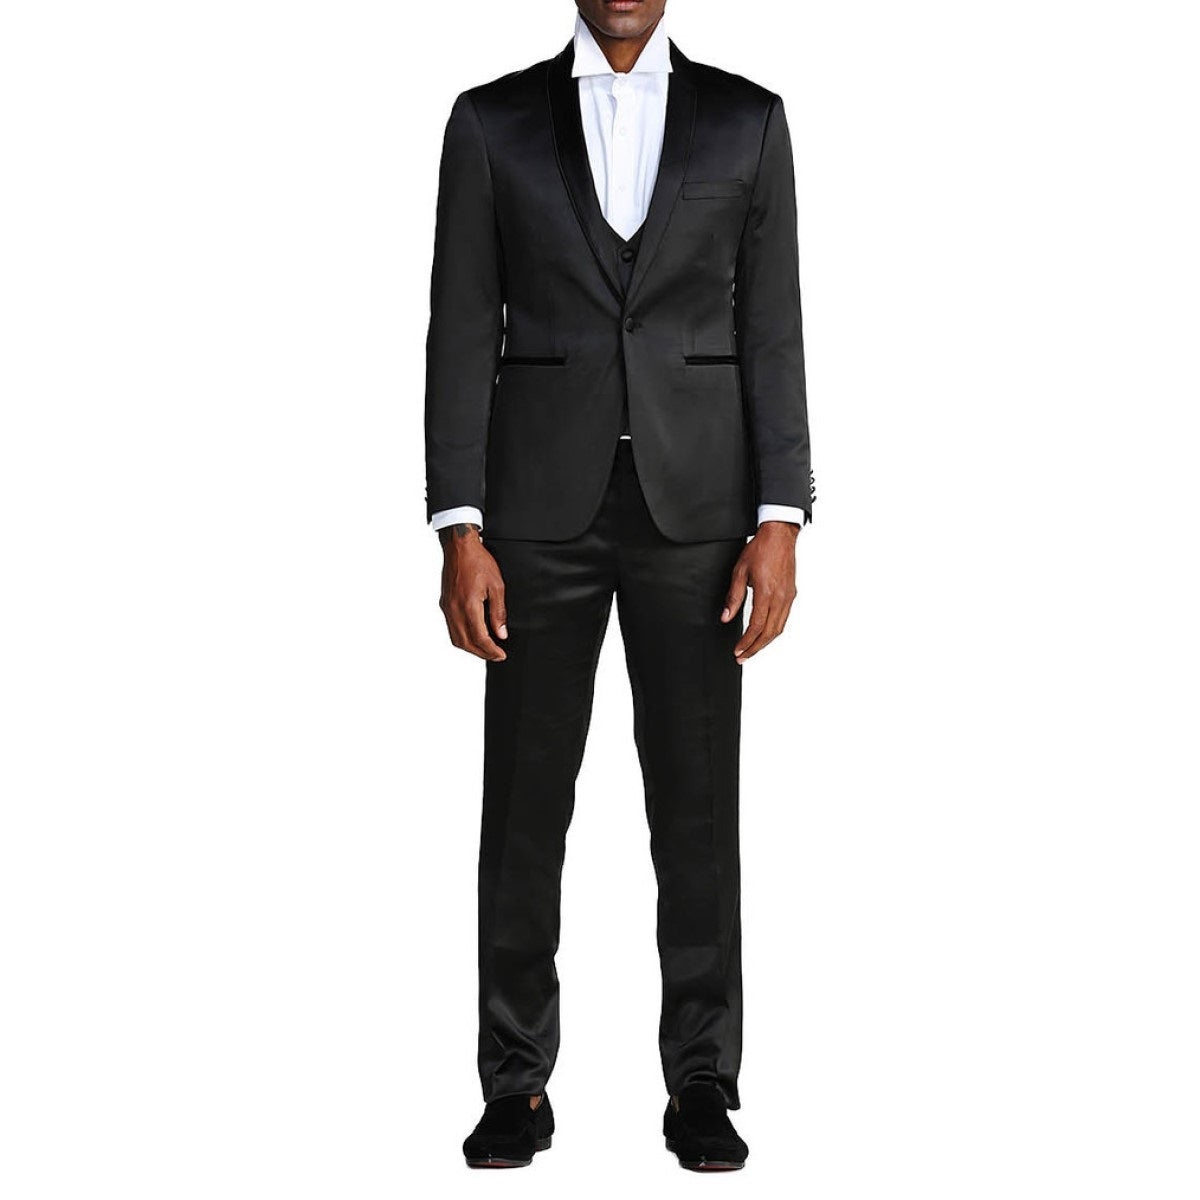 Traje Formal para Hombre TA-M288SK-01 - Formal Suit for Men